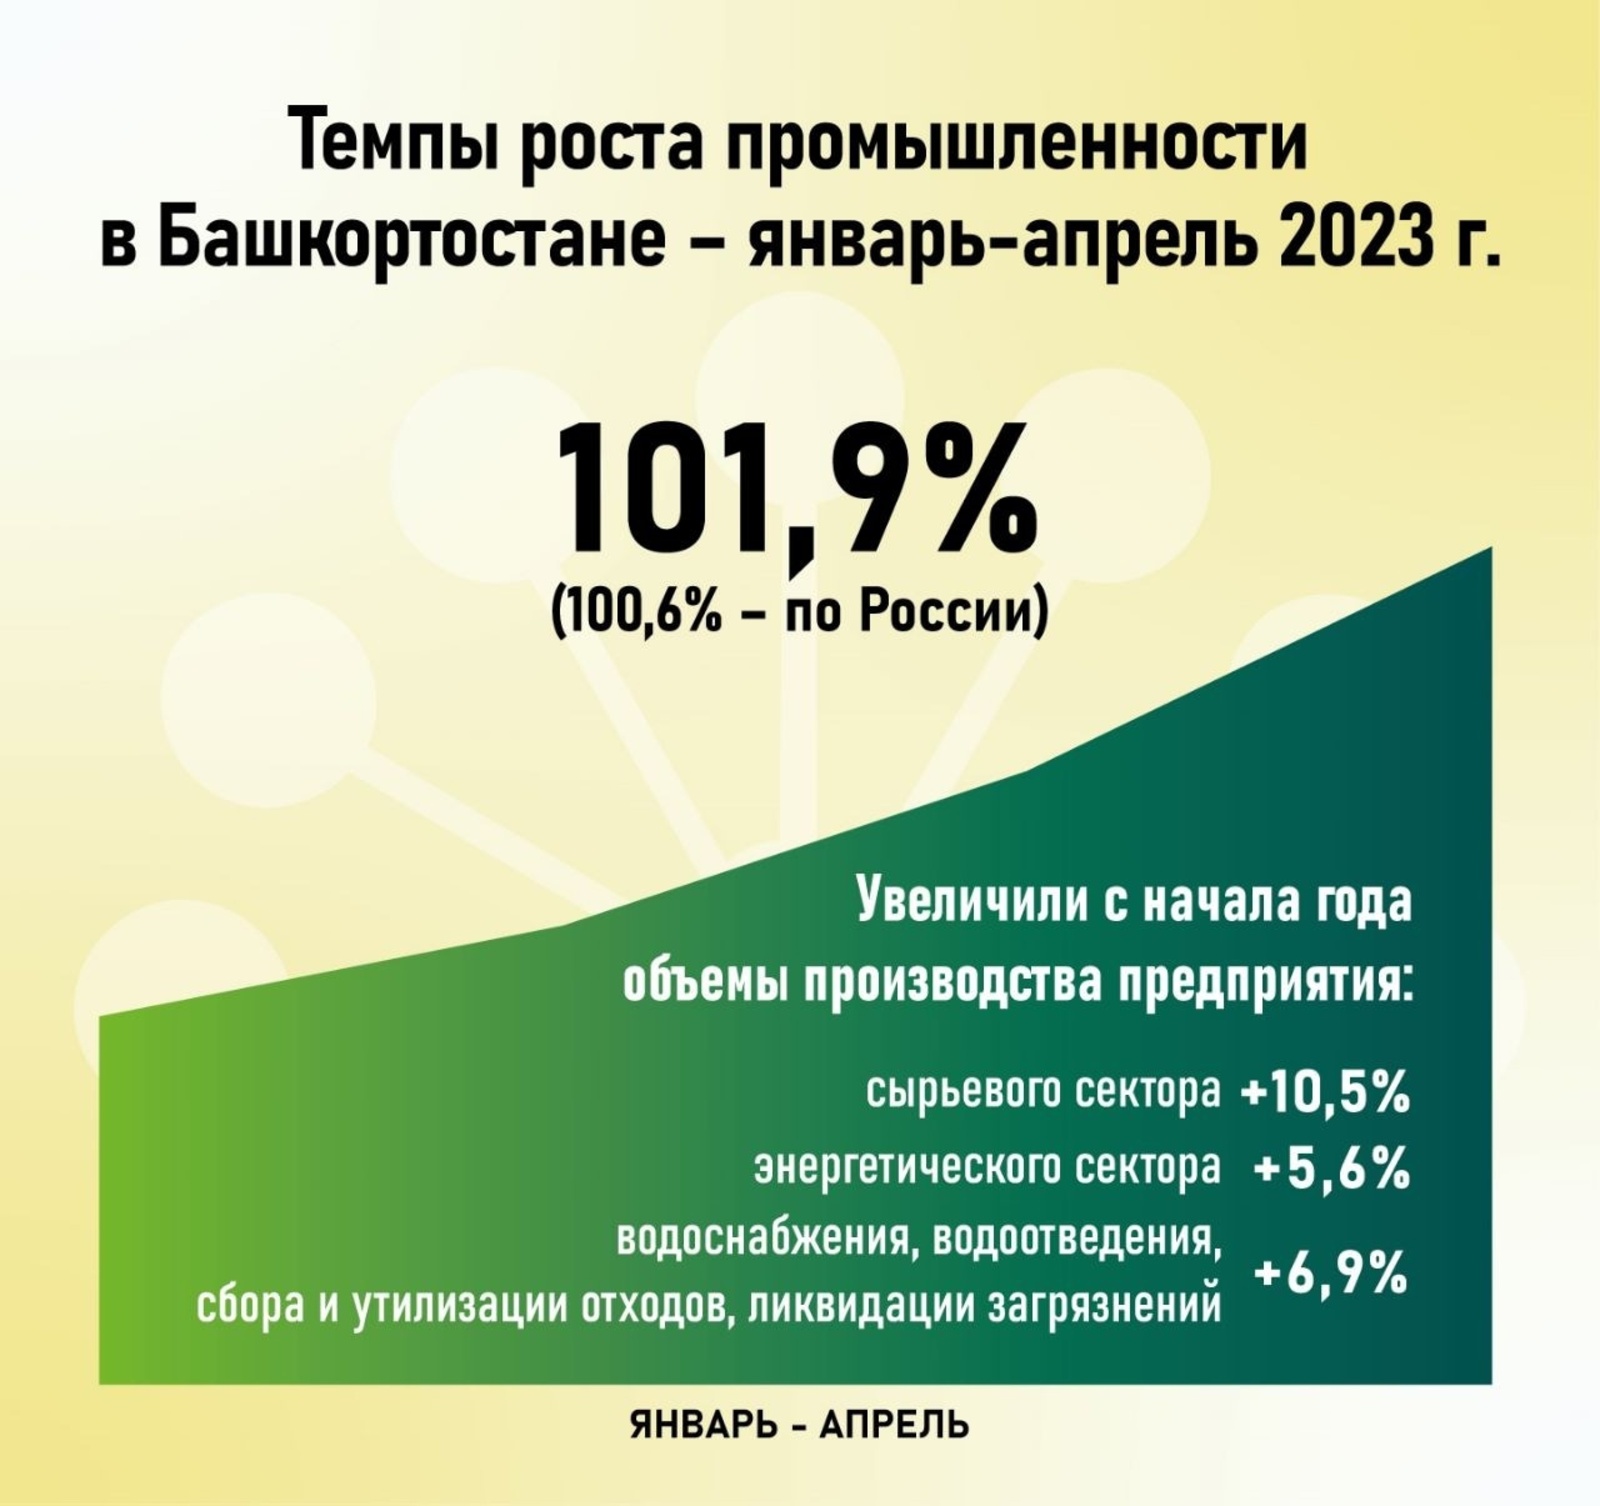 Глава Башкирии озвучил темпы роста промышленности